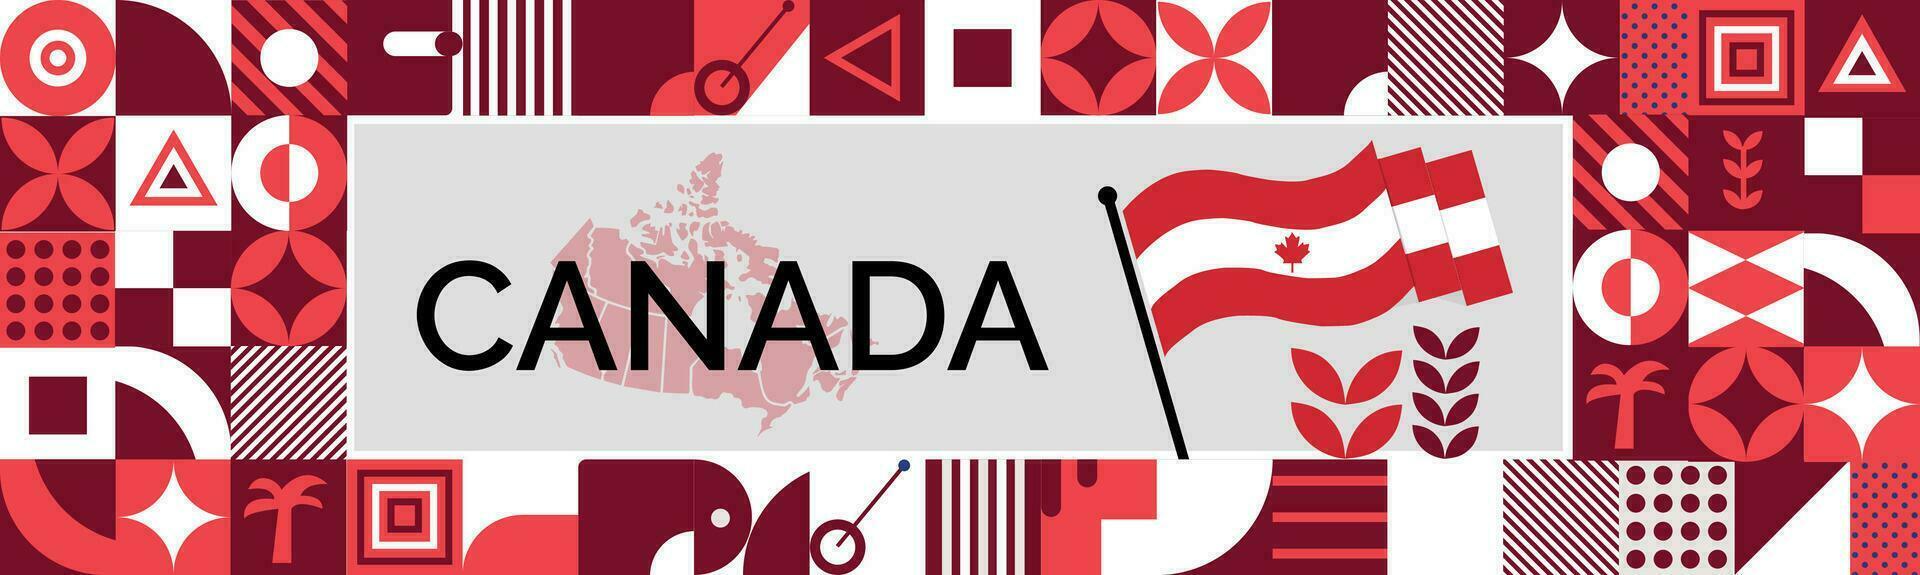 Canada carta geografica e sollevato pugni. nazionale giorno o indipendenza giorno design per Canada celebrazione. moderno retrò design con astratto icone. vettore illustrazione.